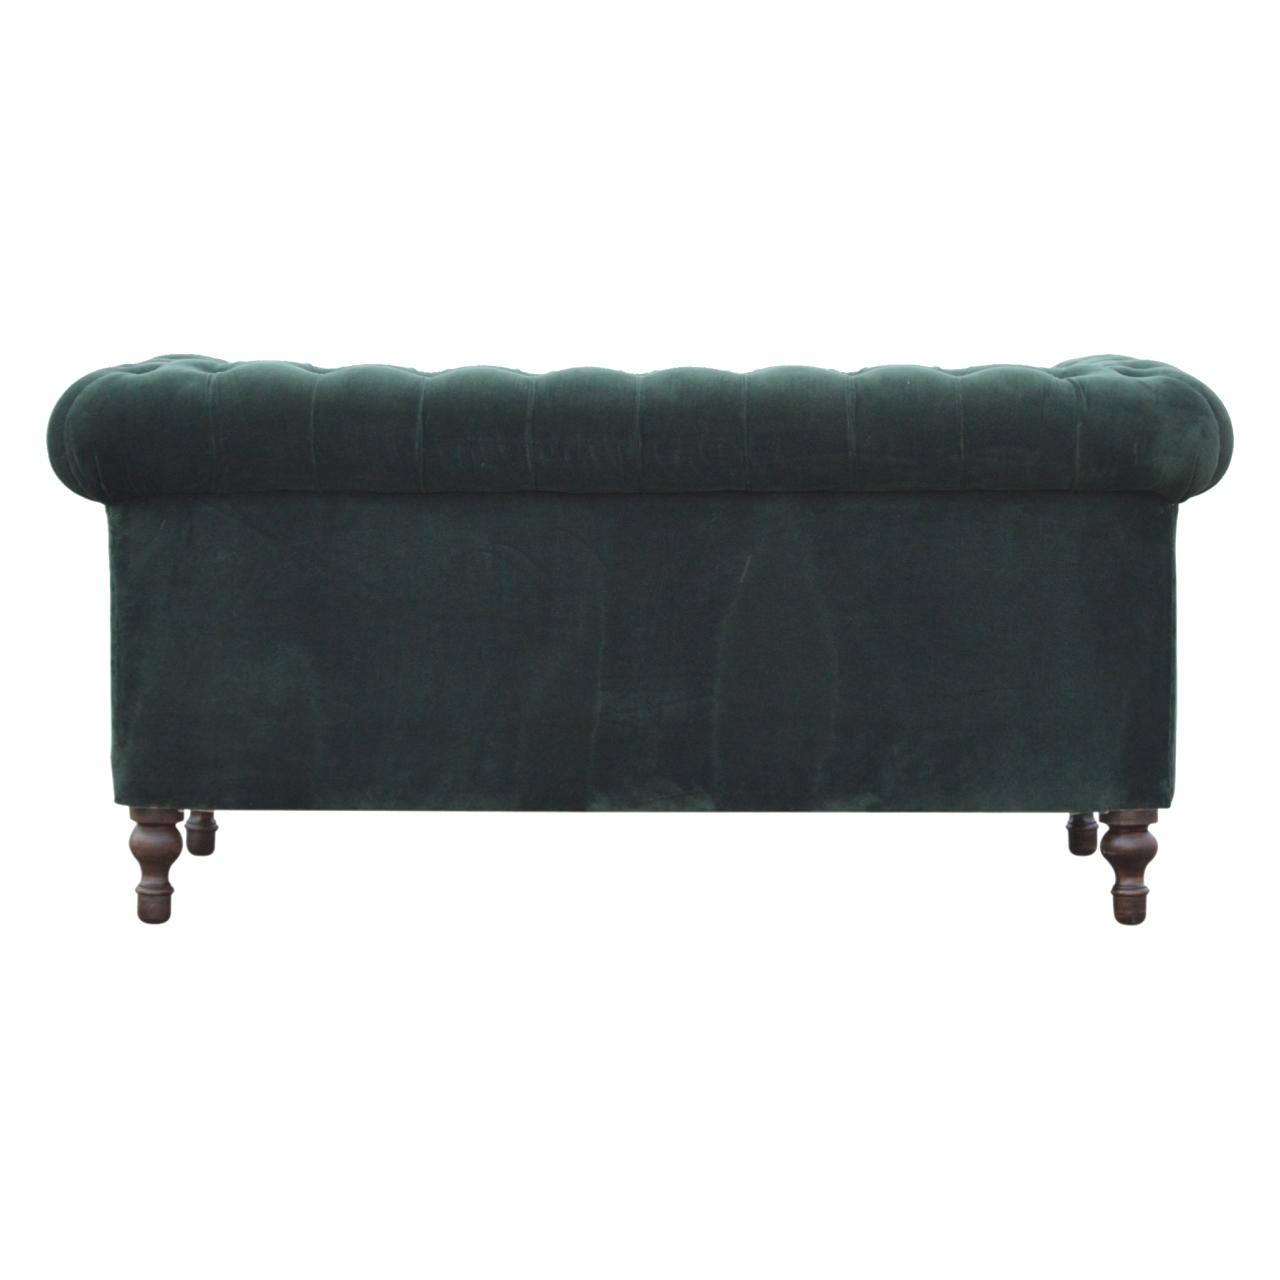 Emerald Green Velvet 2 Seater Chesterfield Sofa